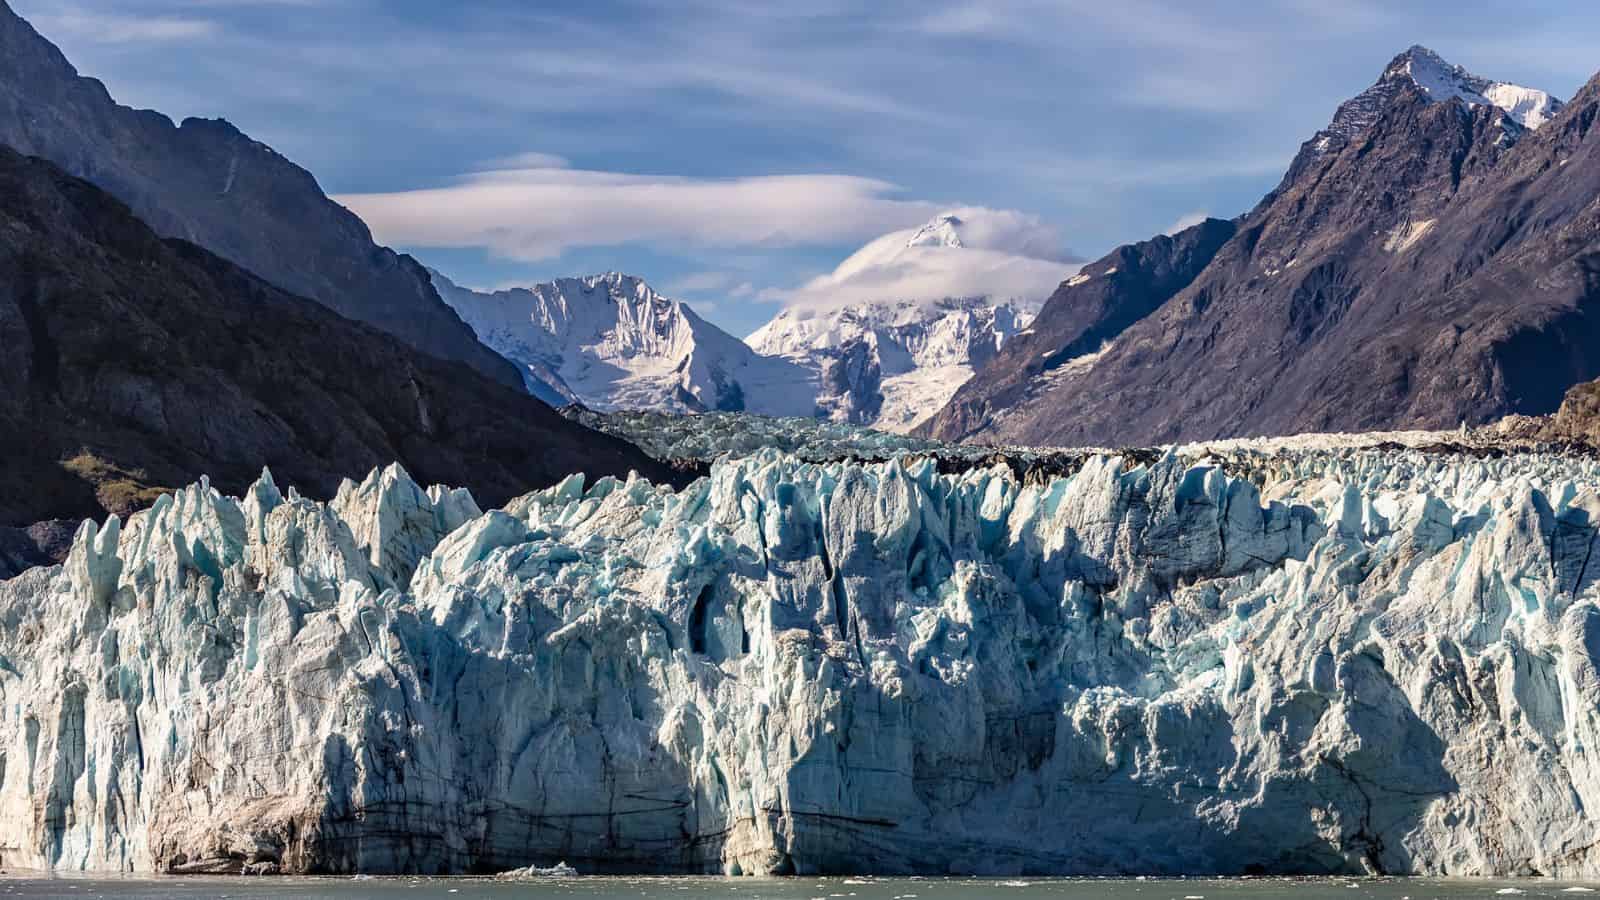 Glaciers in Alaska